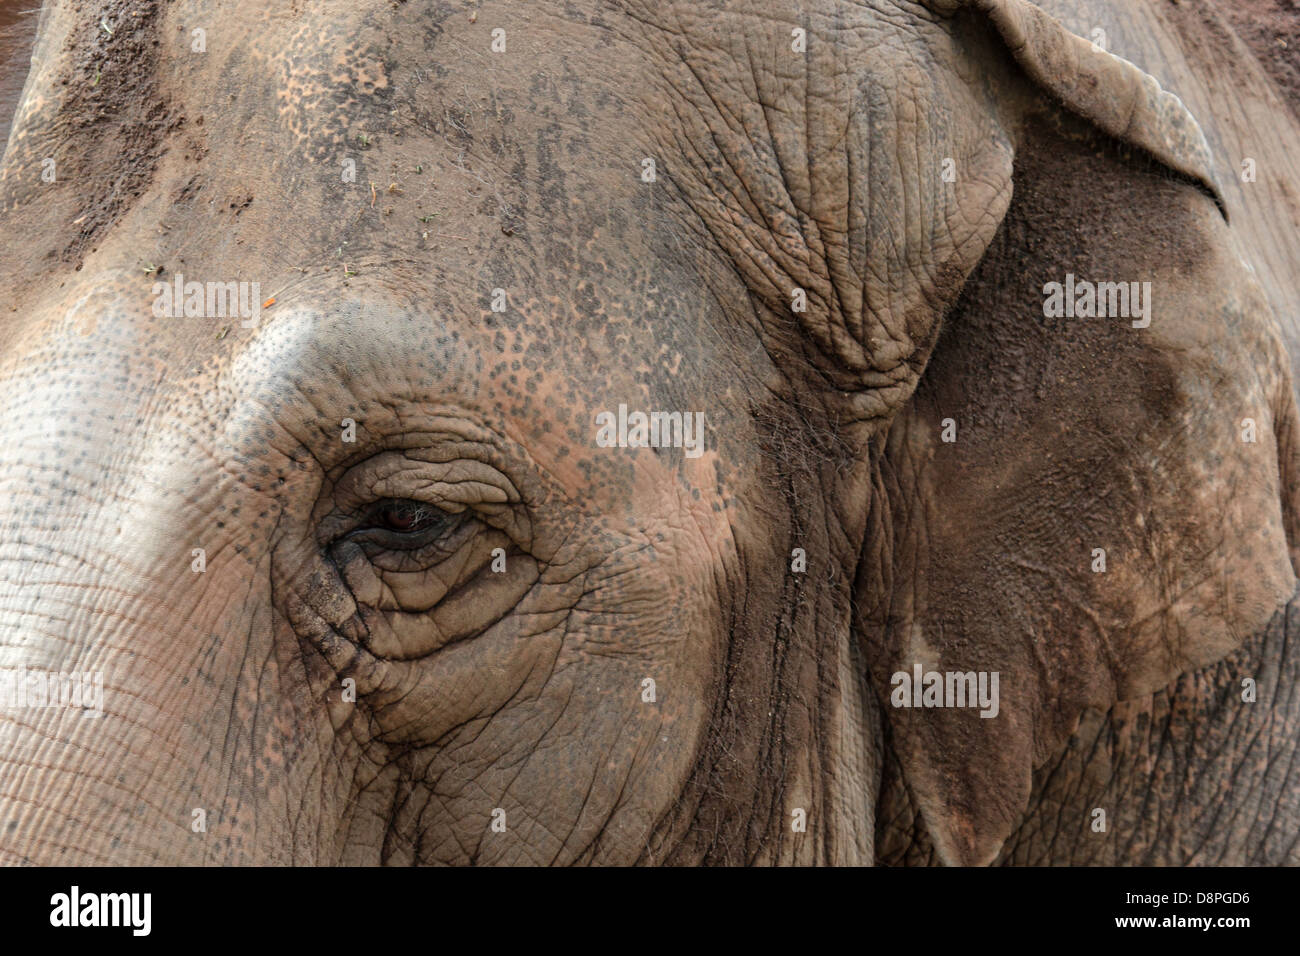 Primo piano dell'occhio ed orecchio di un elefante asiatico, la pelle raggrinzita è coperto da fango Foto Stock